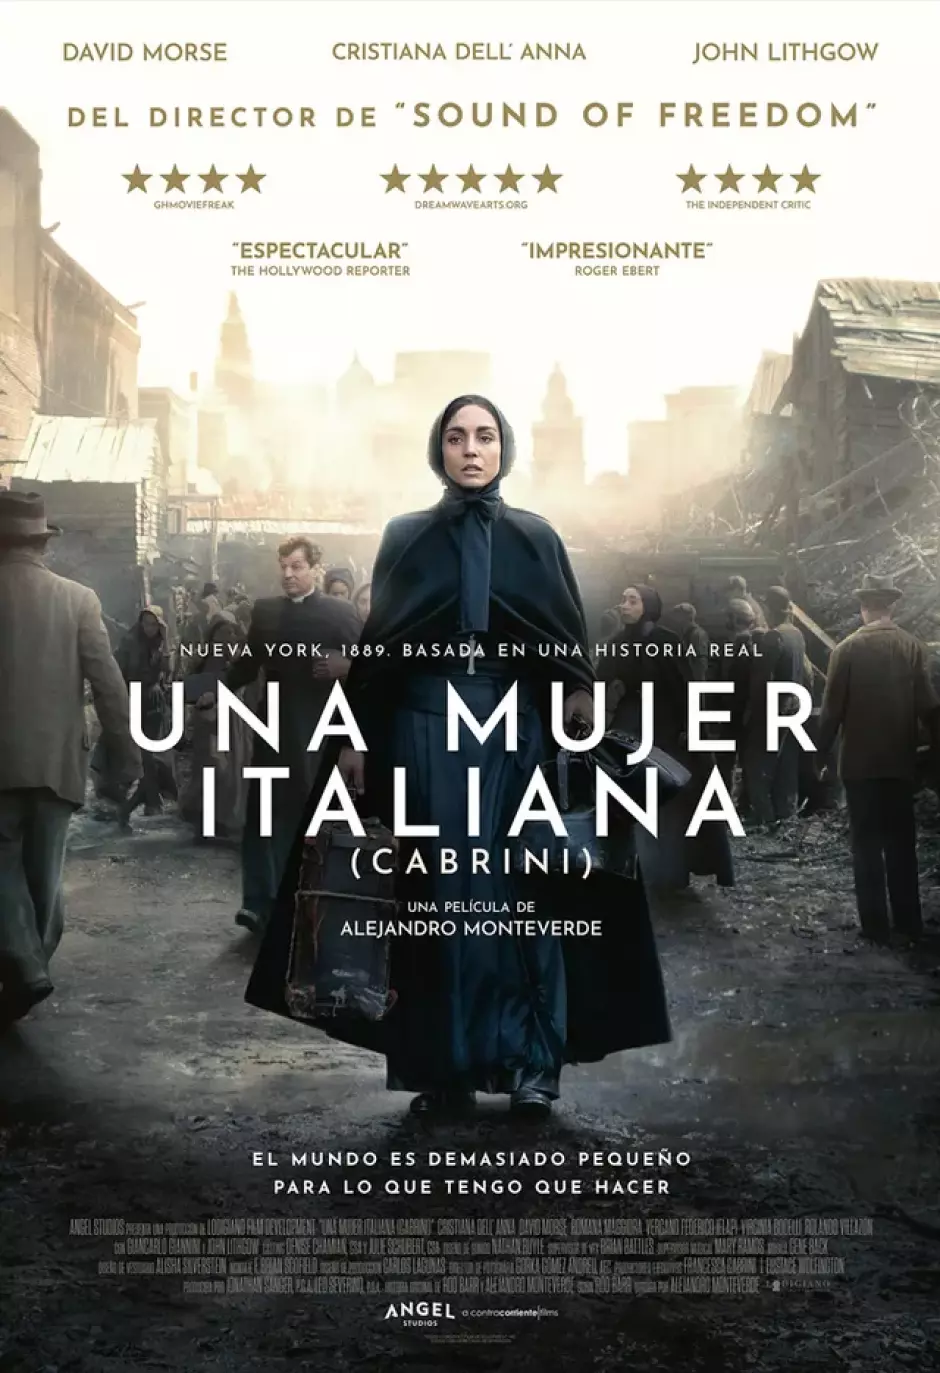 La película llega a los cines de toda España este viernes